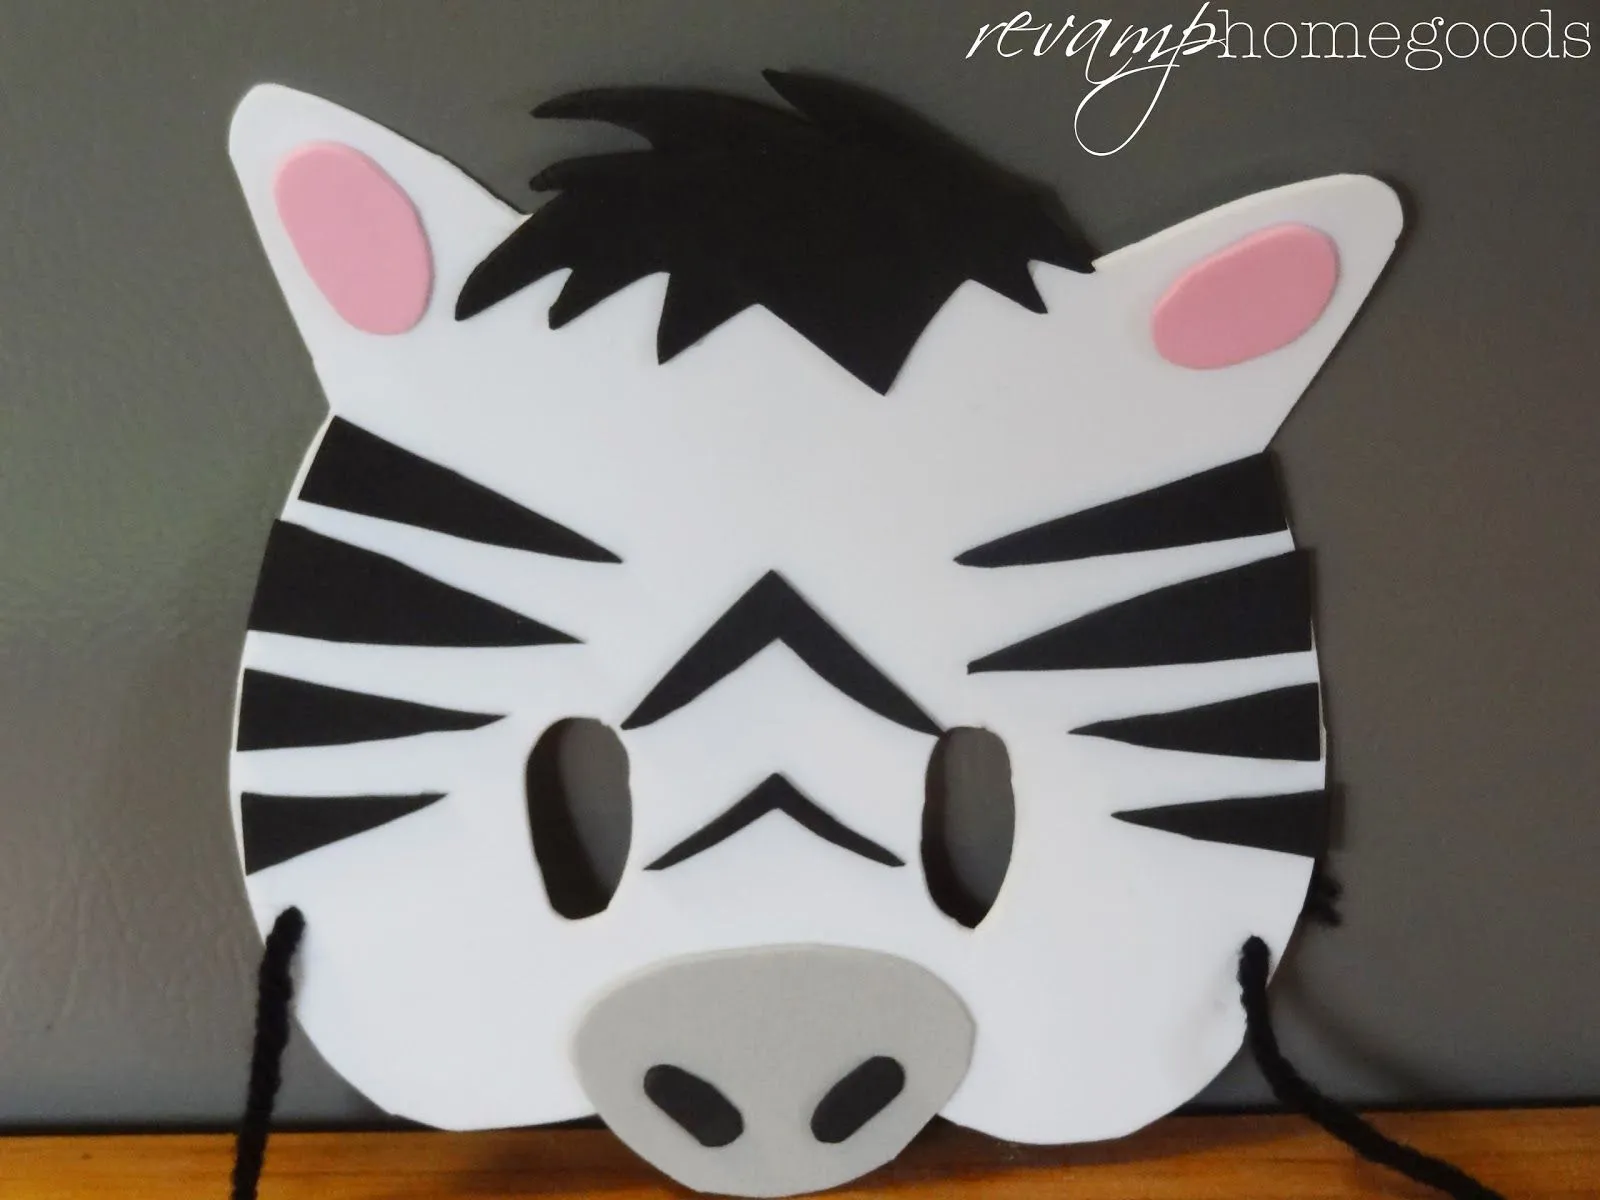 Revamp Homegoods: Kids Crafts: Foam Animal Masks